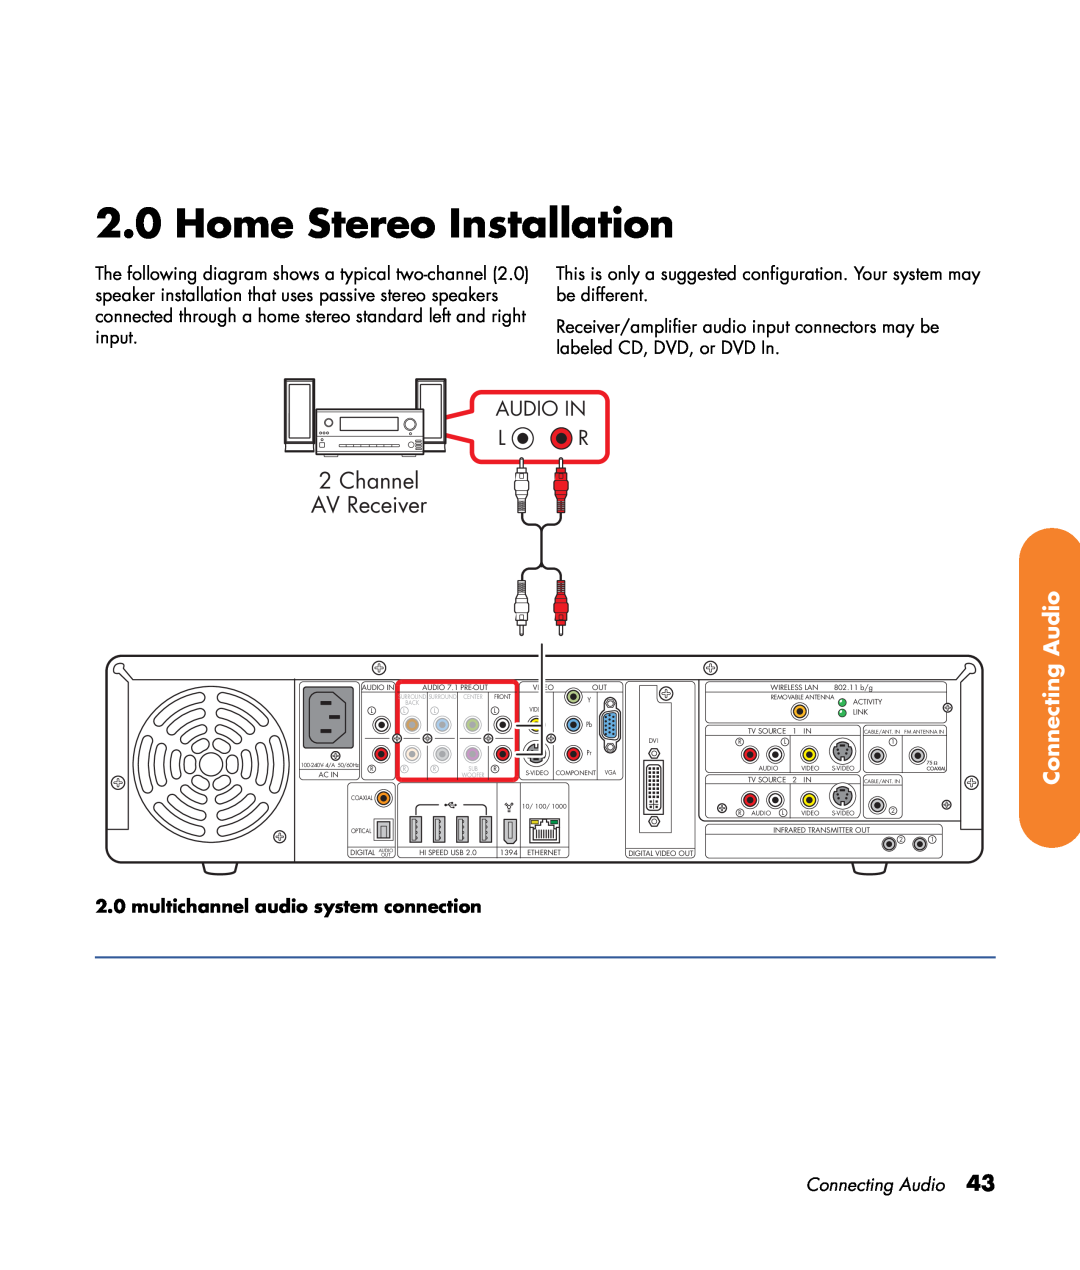 HP z540, z557, z555, z552, z545 manual Home Stereo Installation, Channel AV Receiver, Audio In L R, Connecting Audio 